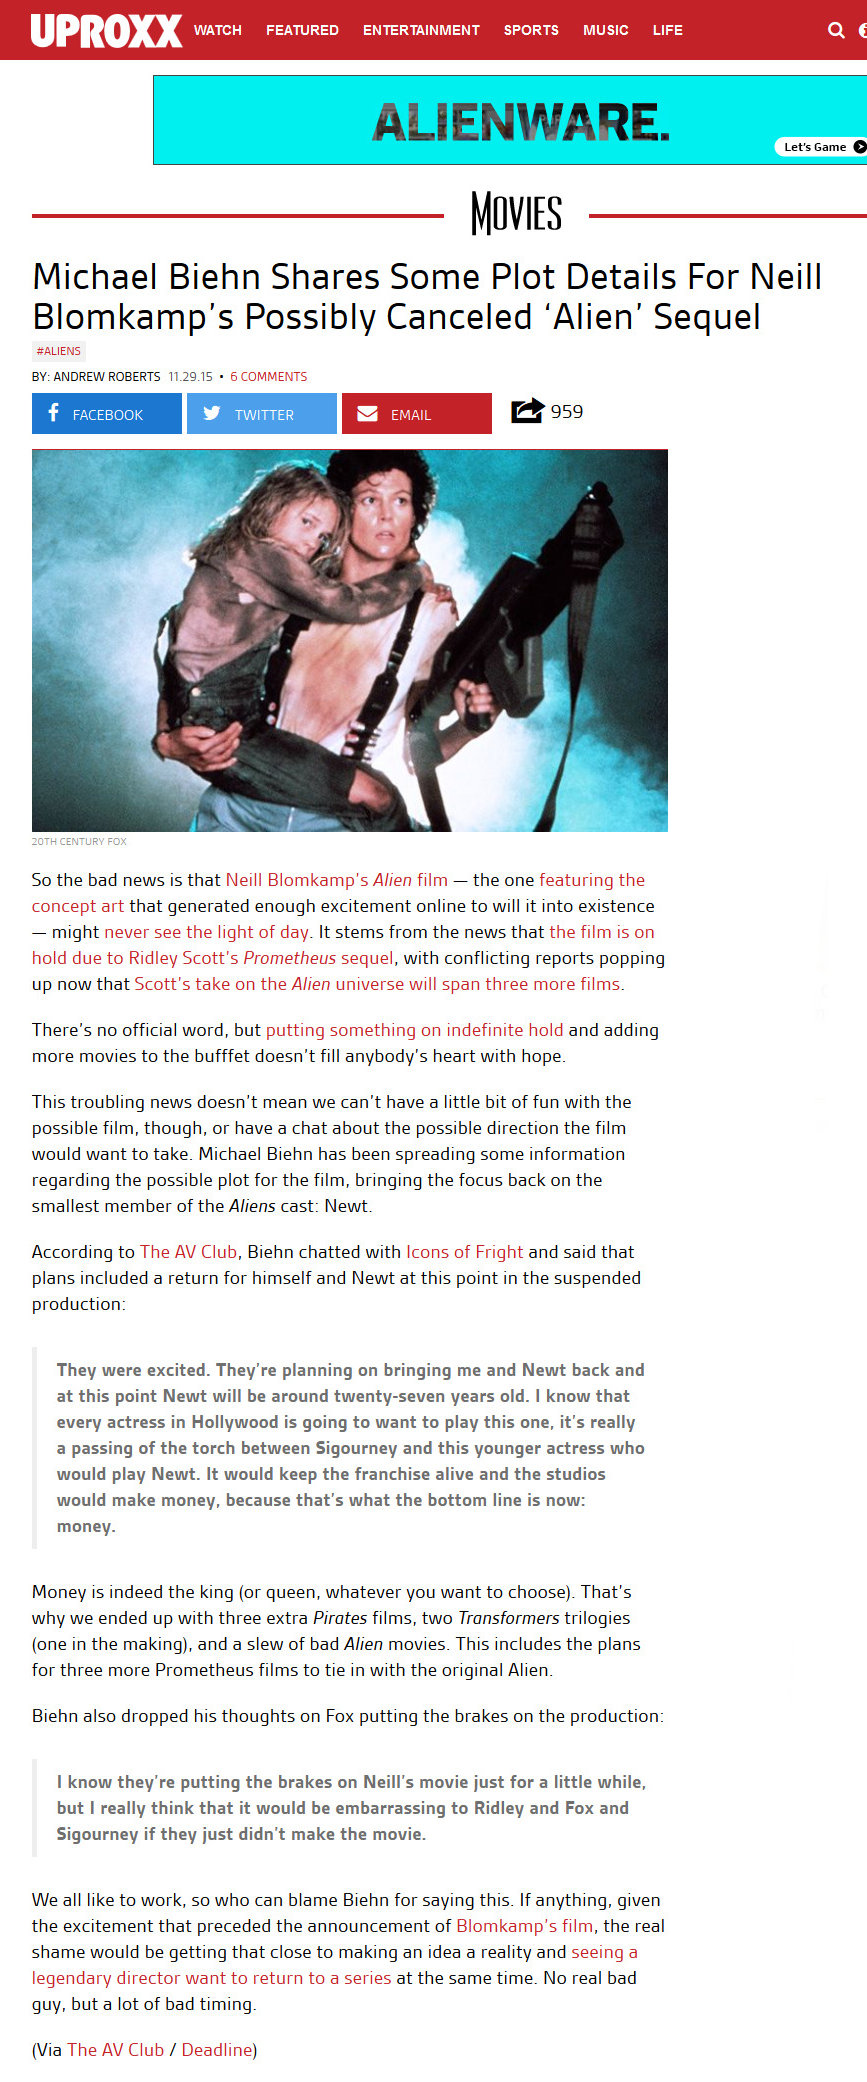 Michael Biehn Talks Neill Blomkamp's Aliens Sequel - Newt Will Return
Andrew Roberts - 29 Nov 2015
uproxx.com
Keywords: ;media_publicity;aliens_alien5